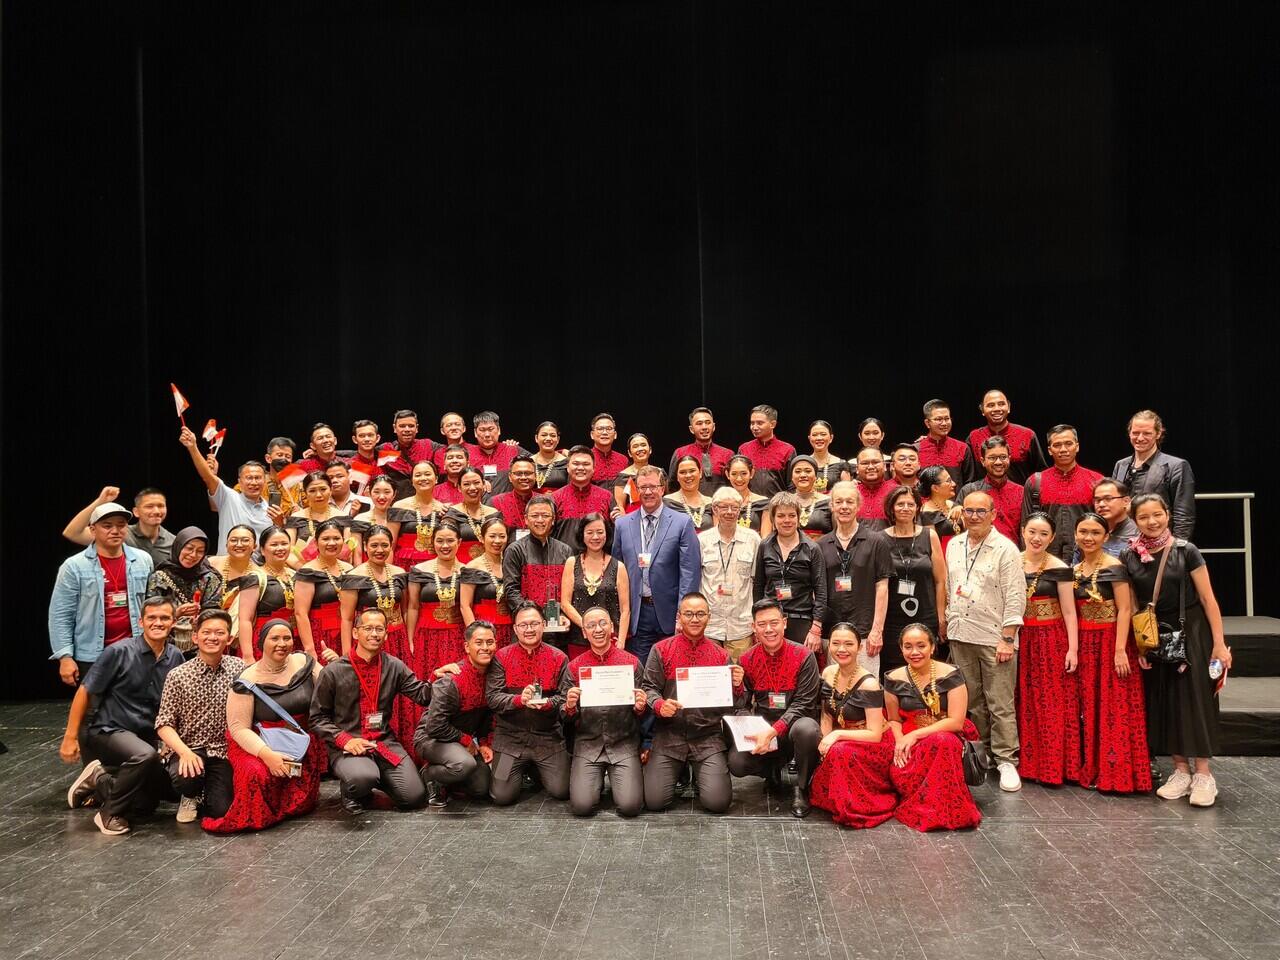 Batavia Madrigal Singers Jadi Juara ‘European Grand Prix for Choral Singing’ 2022!